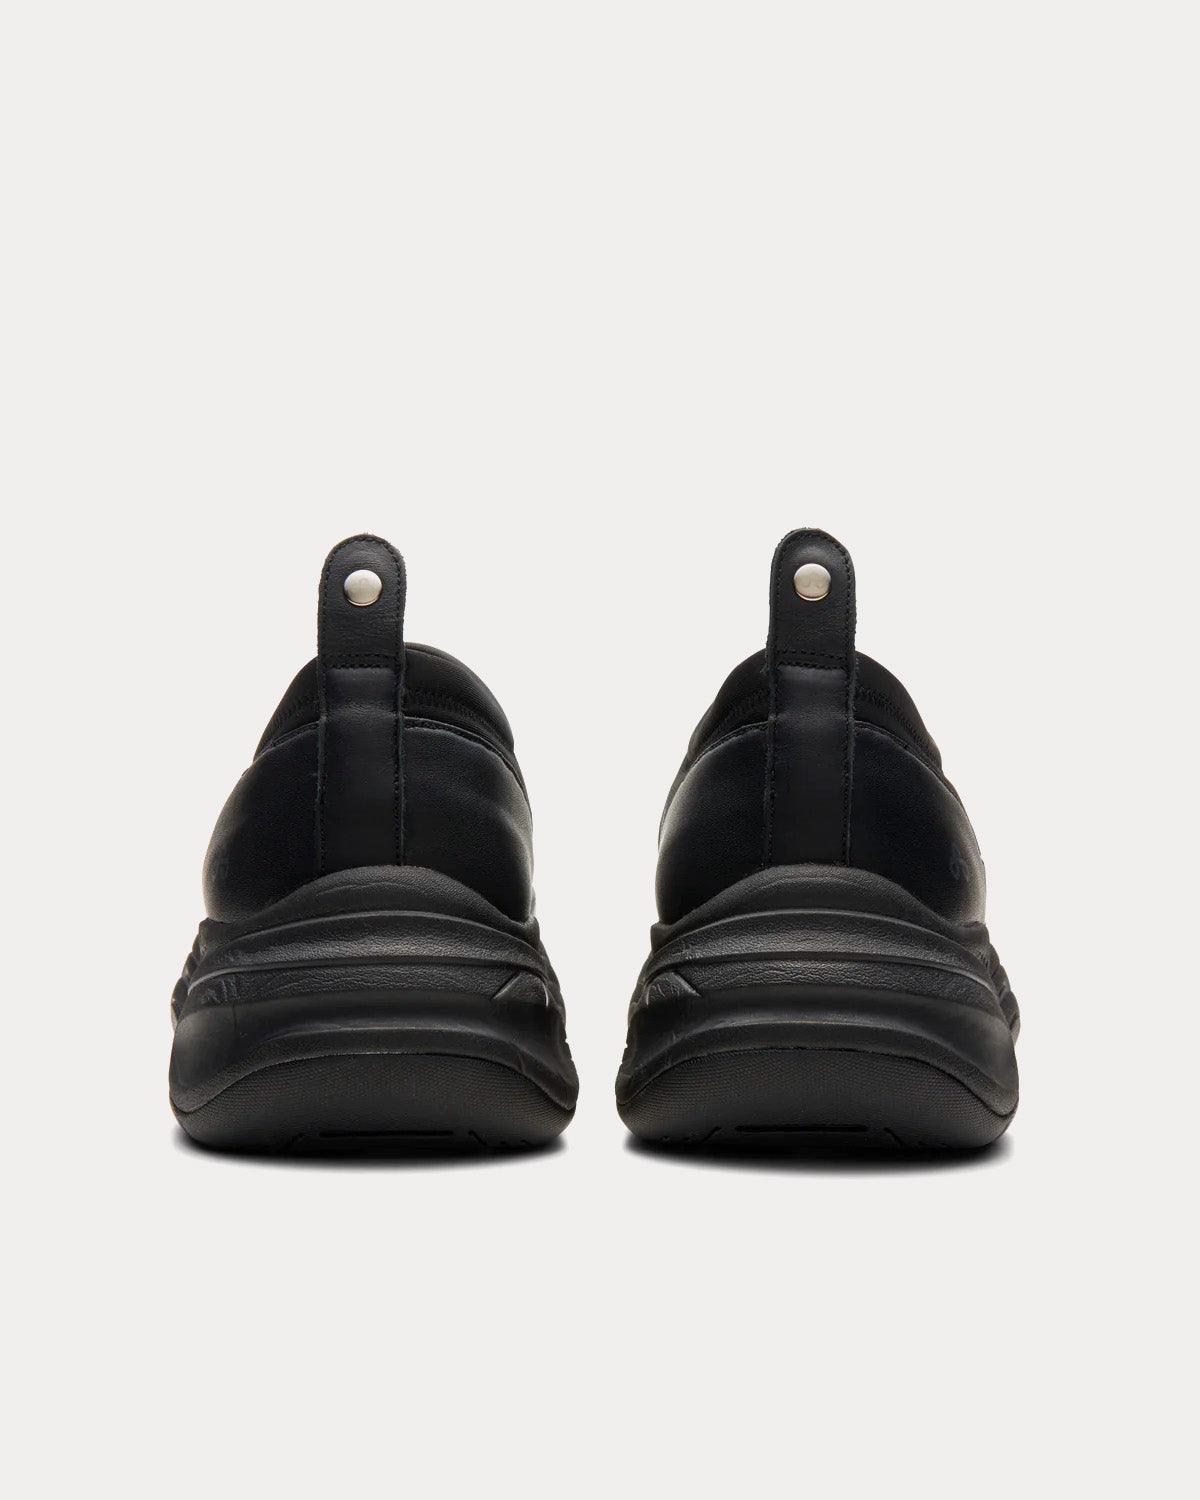 OAO - Wynd Black Slip On Sneakers